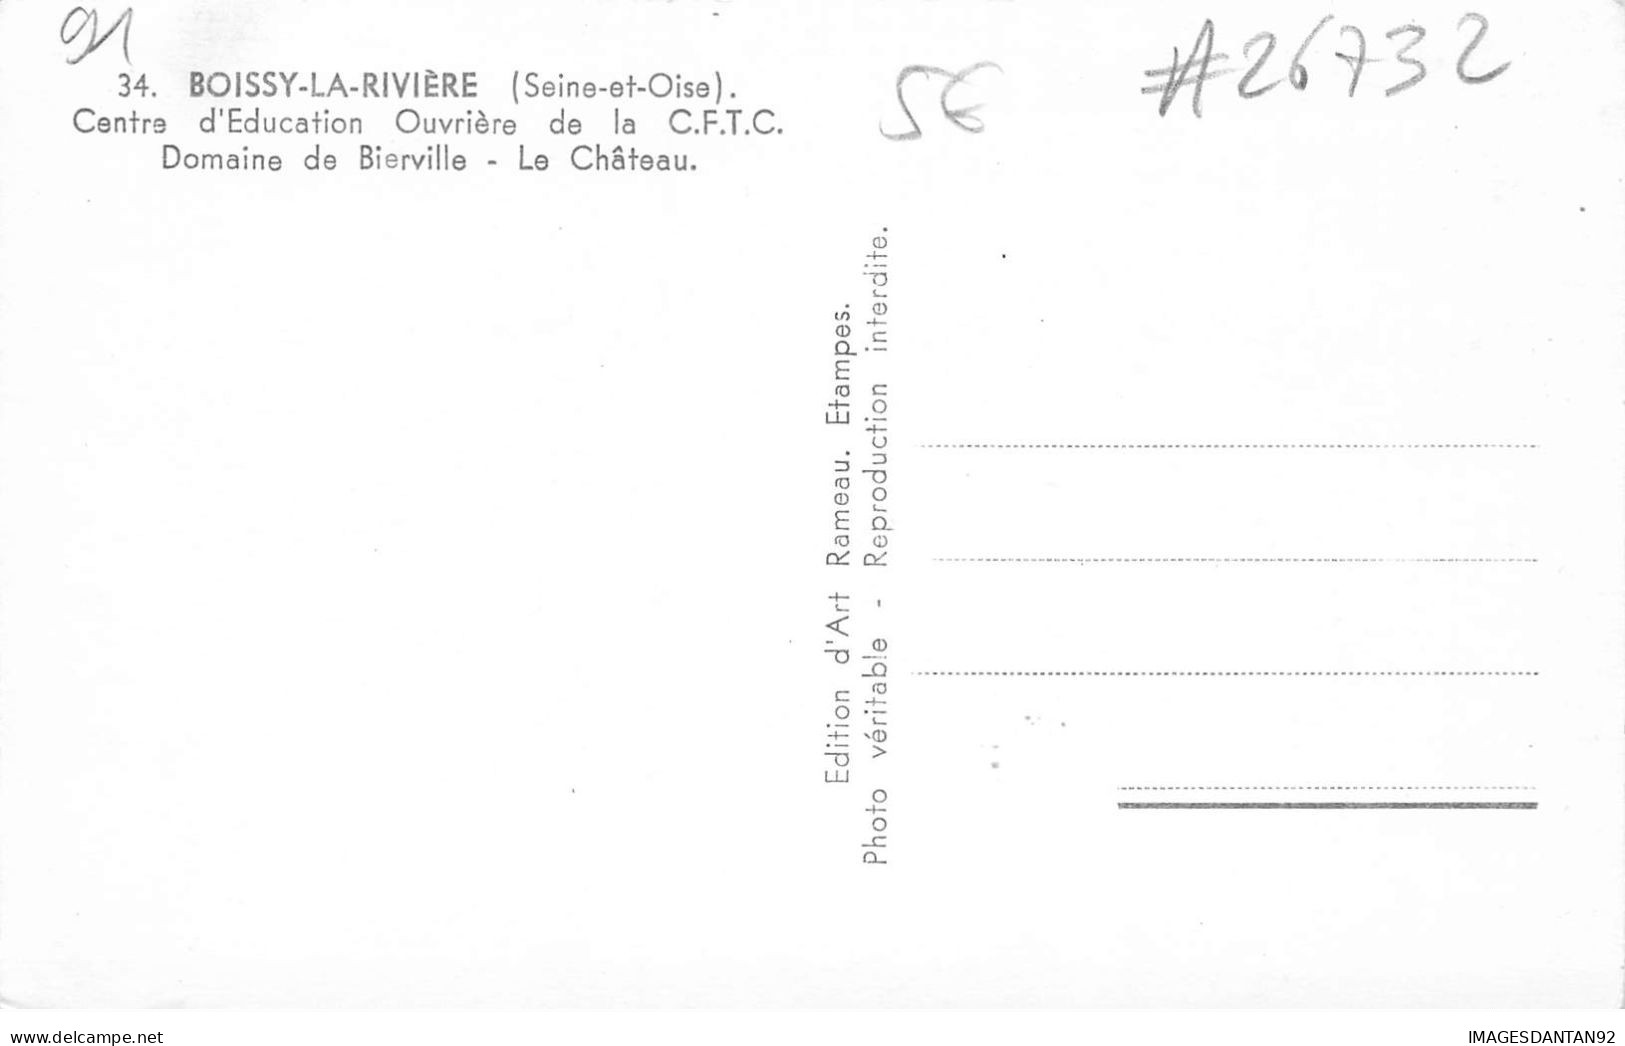 91 BOISSY LA RIVIERE #26732 CENTRE D EDUCATION OUVRIERE CFTC DOMAINE BIERVILLE CHATEAU - Boissy-la-Rivière